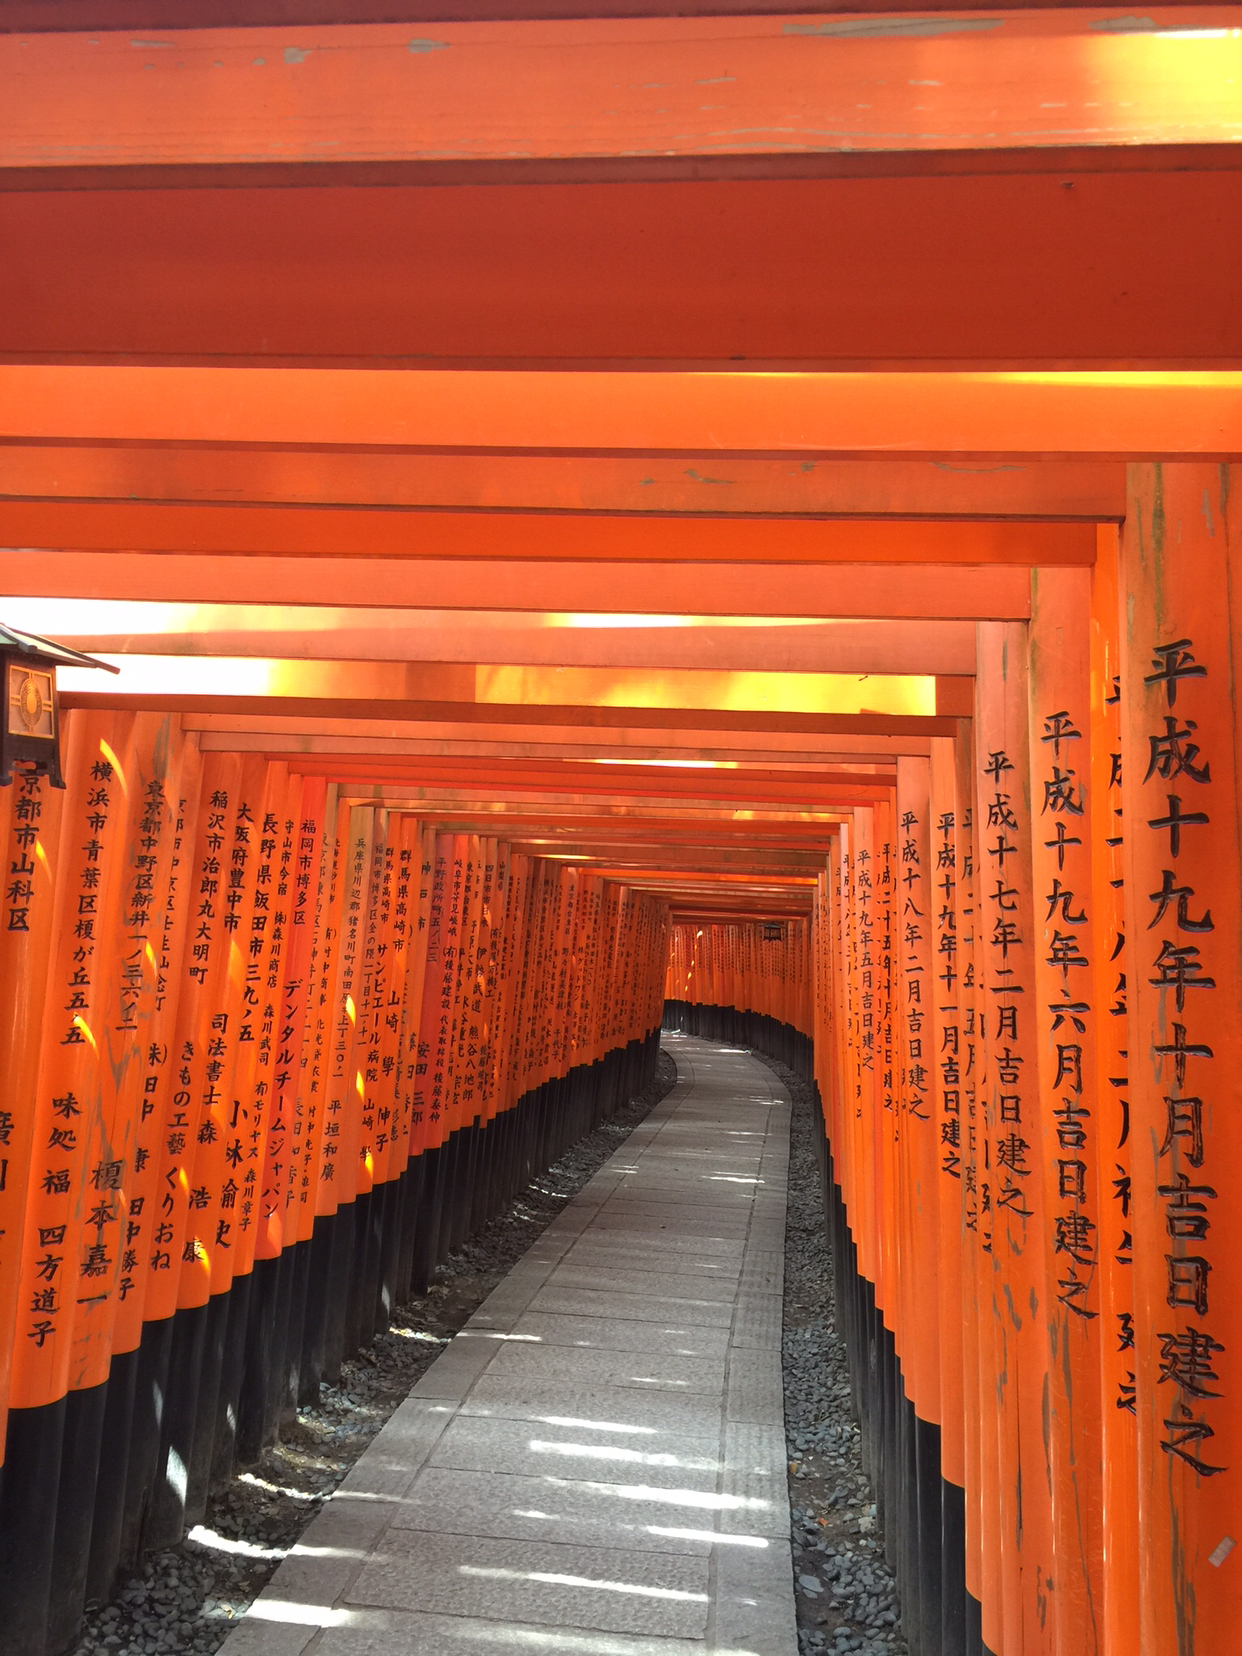 奈良和京都你更喜欢哪里 好像大家都更喜欢京都 马蜂窝